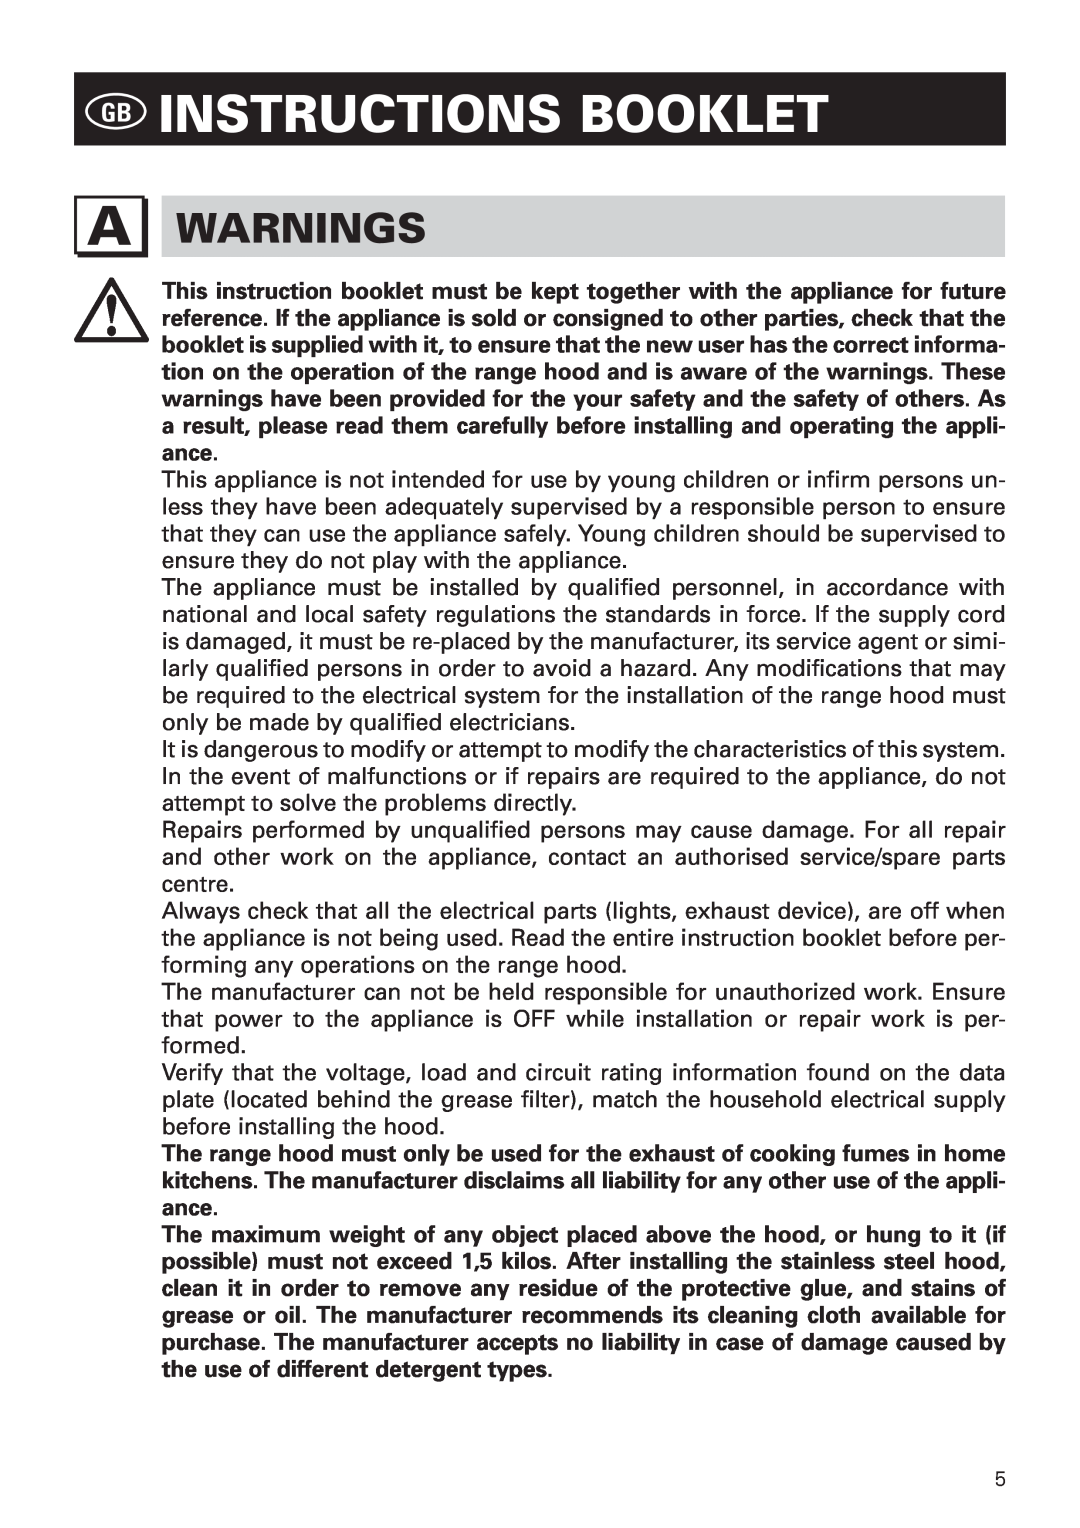 Bertazzoni KIN 36 PER X, KIN 30 PER X manual Gb Instructions Booklet, Warnings 